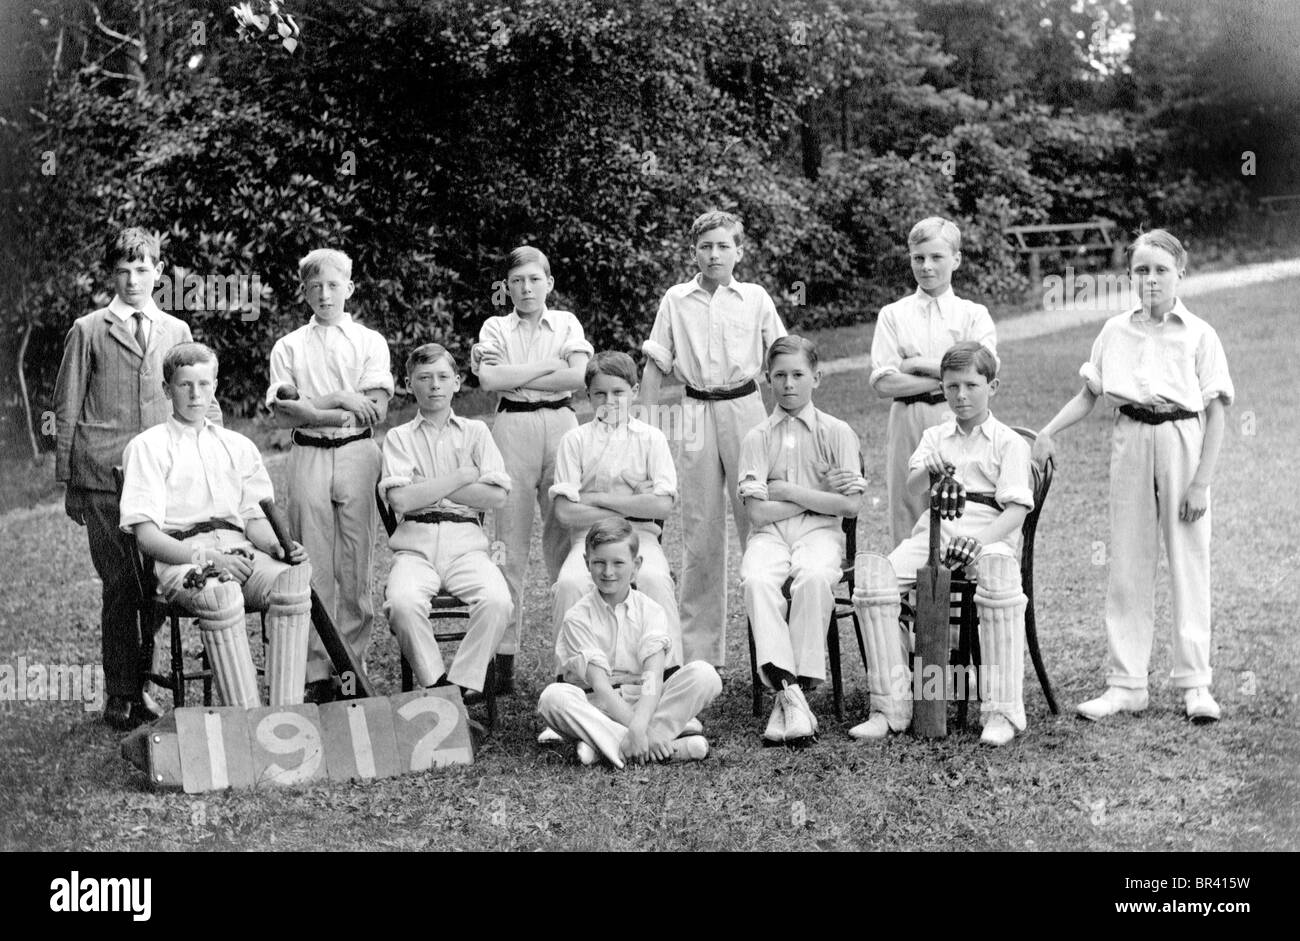 Imagen histórica, el equipo de críquet, ca. 1924 Foto de stock